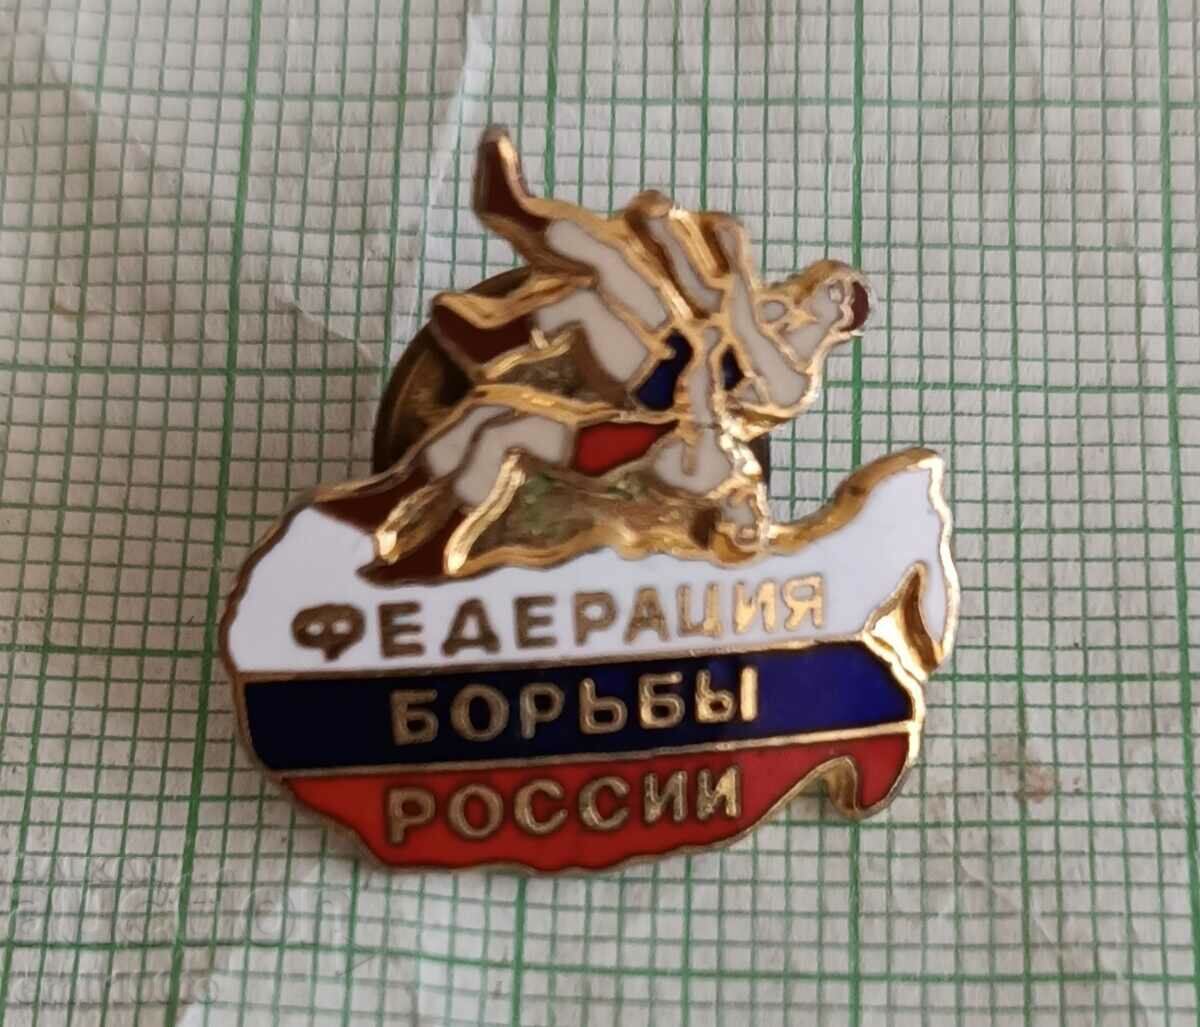 Σήμα - Ρωσική Ομοσπονδία Πάλης